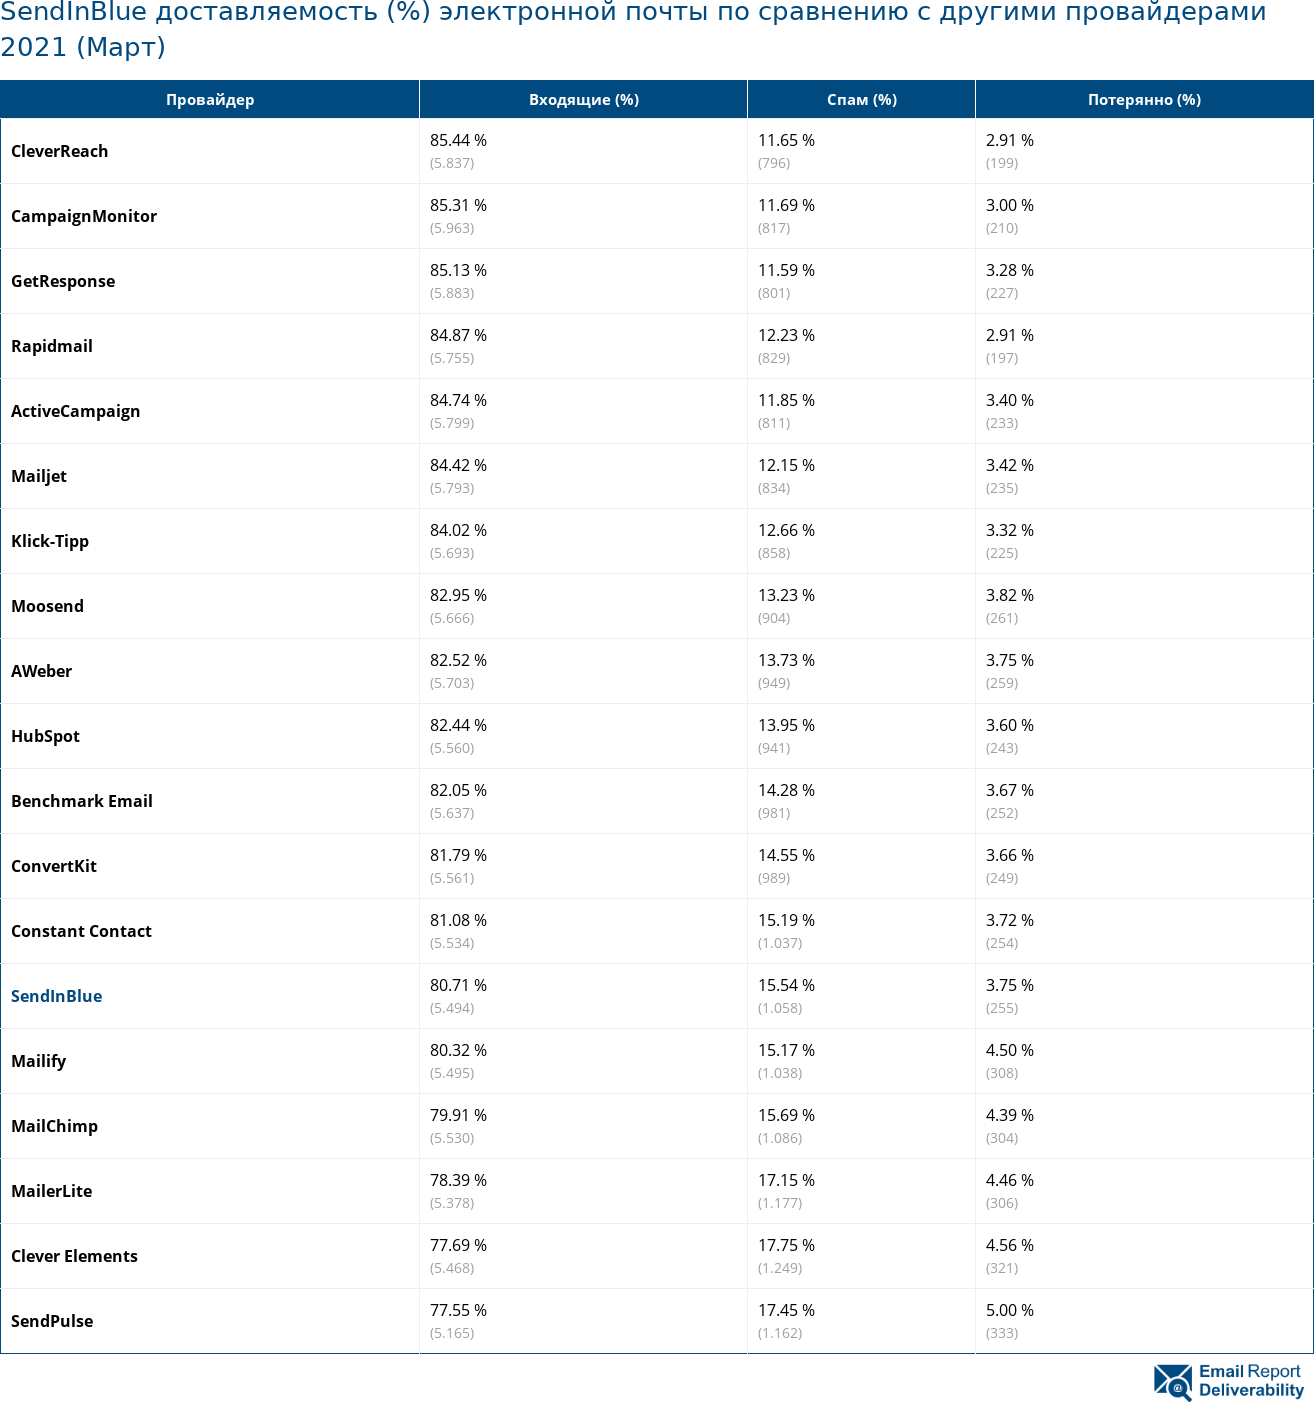 SendInBlue доставляемость (%) электронной почты по сравнению с другими провайдерами 2021 (Март)